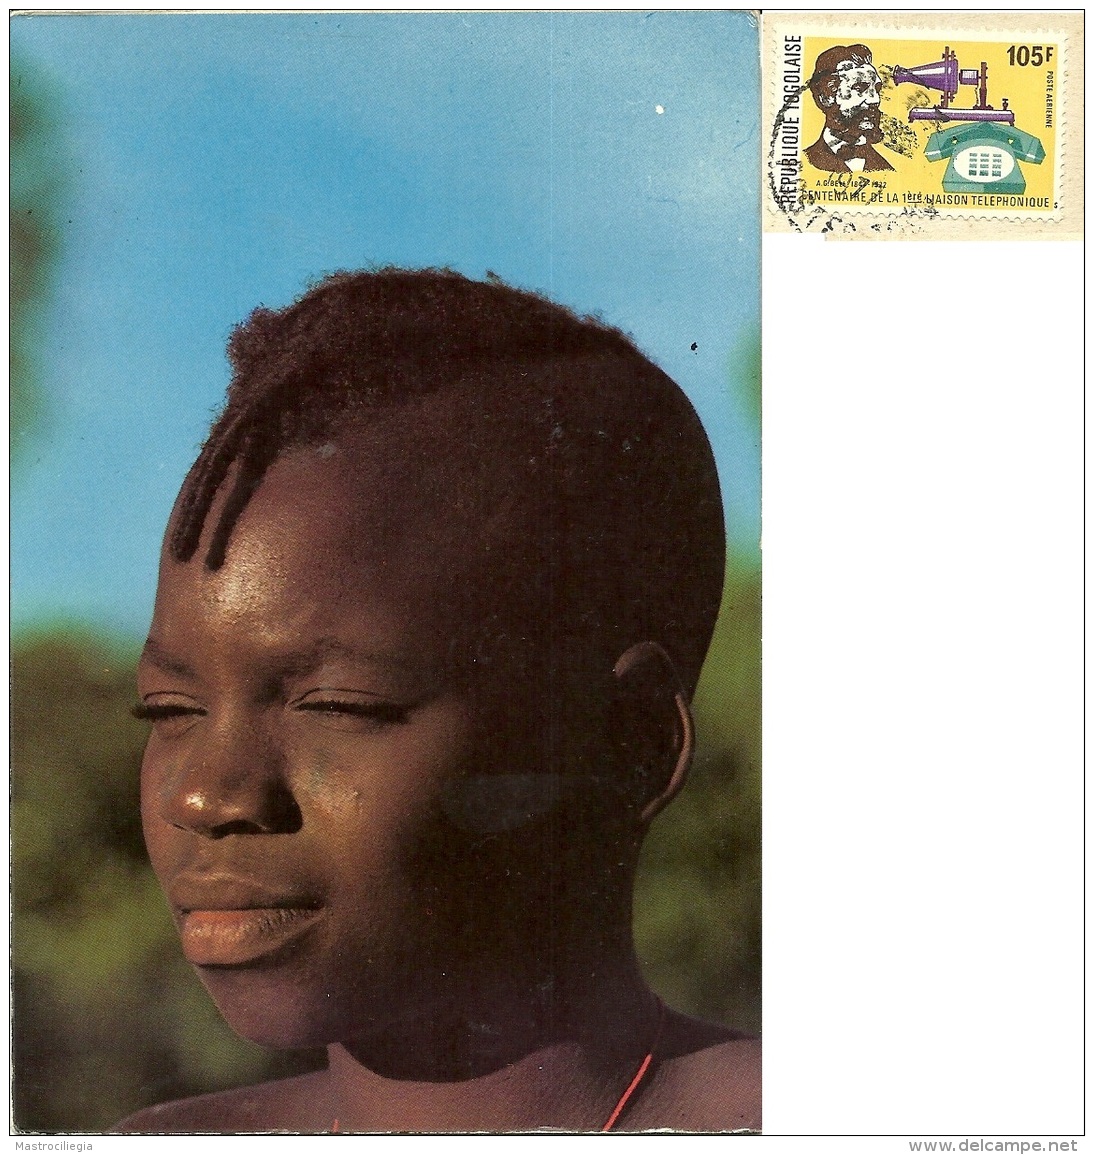 REPUBLIQUE TOGOLAISE  TOGO  Un Beau Visage Togolais  Nice Stamp - Togo